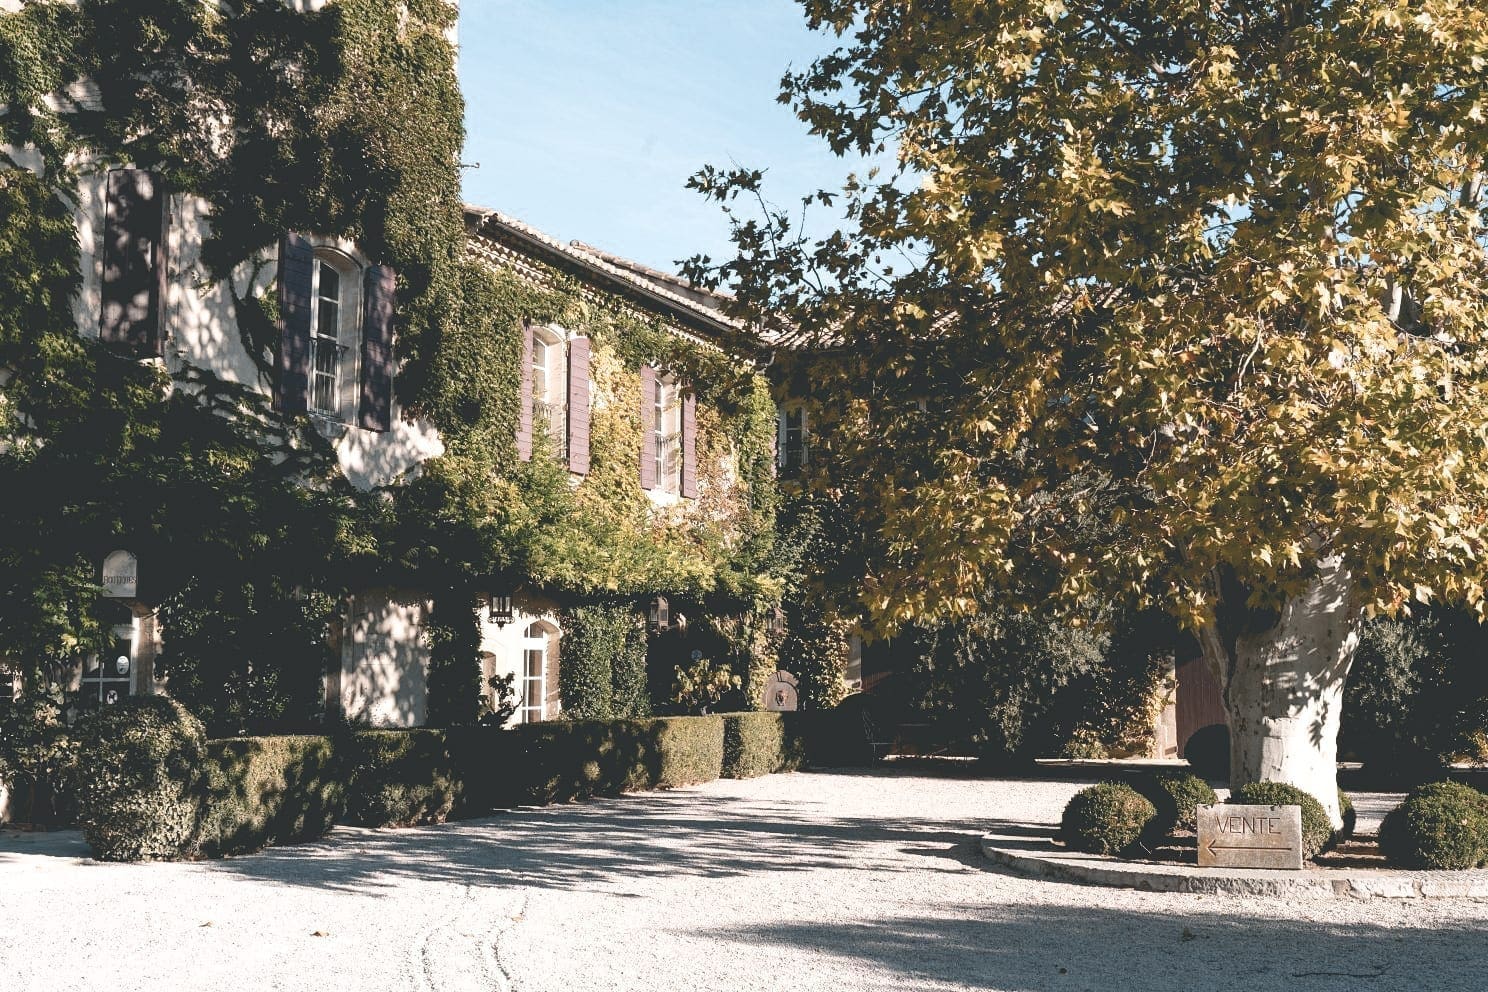 Airbnb finds: Frans kasteel, Airbnb Finds: een gigantisch Frans chateau met butler